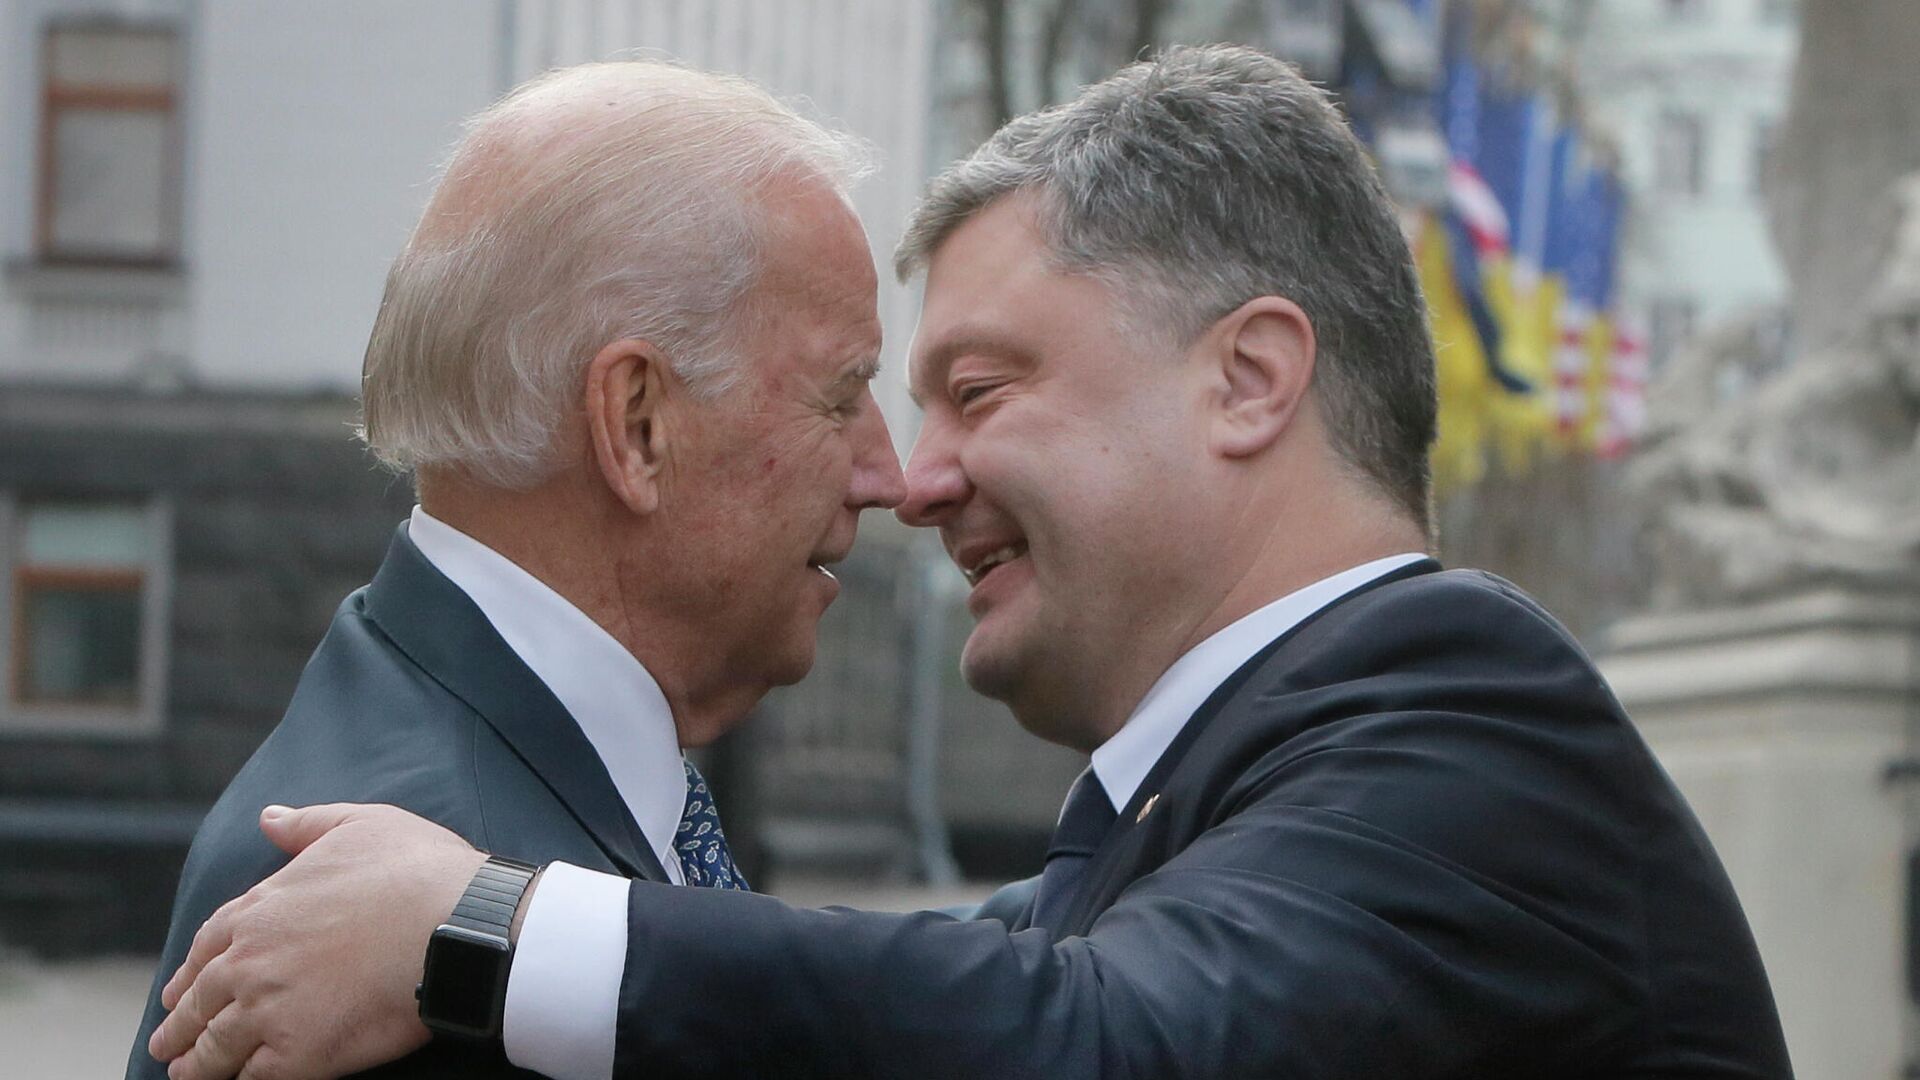 Президент Украины Петр Порошенко и вице-президент США Джо Байден во время встречи в Киеве, 7 декабря 2015 года - РИА Новости, 1920, 01.06.2020